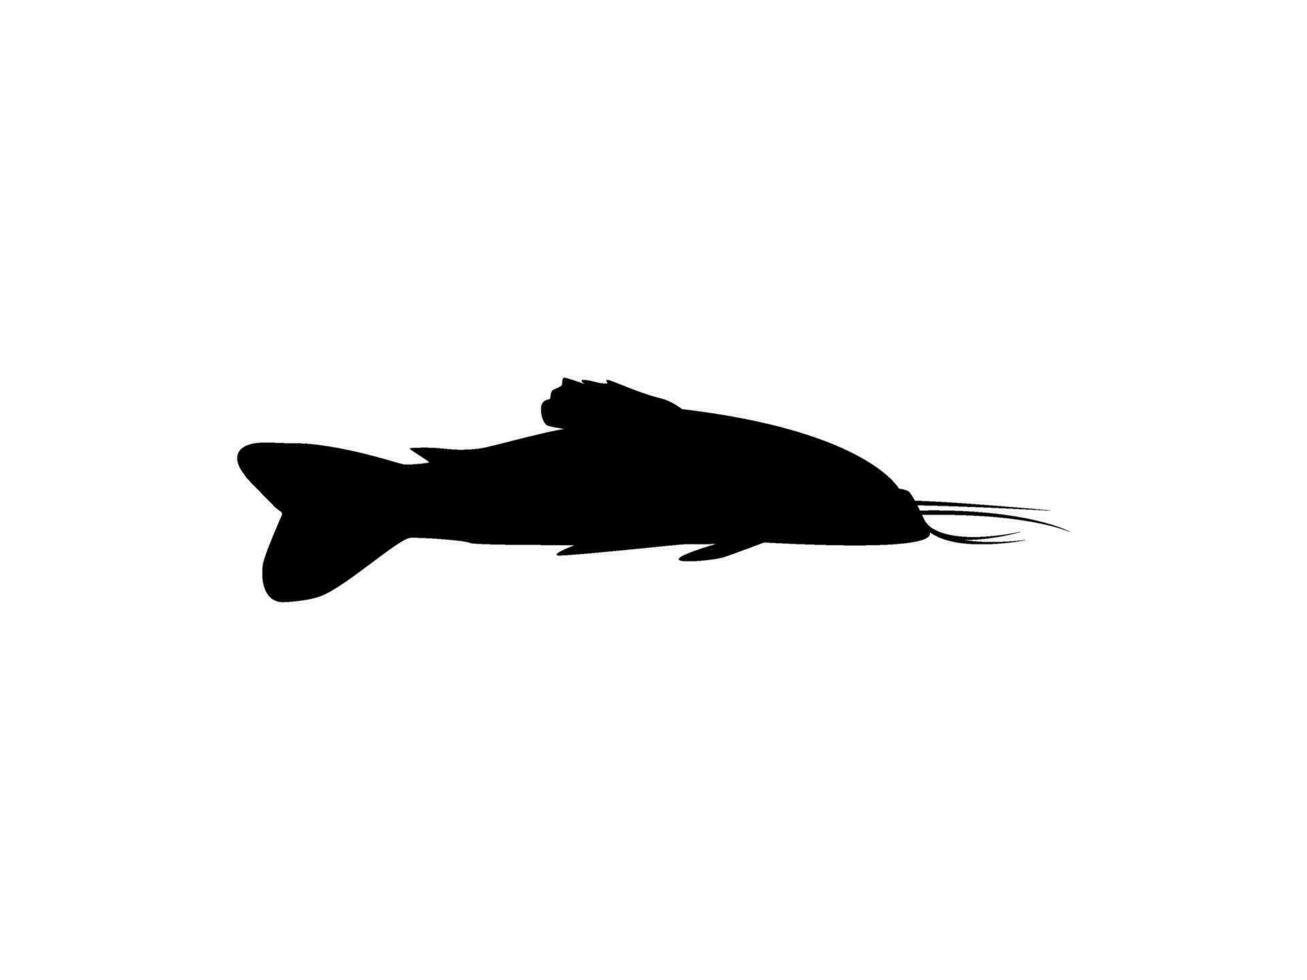 silhouet van de de kwi kwi of hoplosternum litorale is een soorten van gepantserd meerval van de callichthyidae familie. vector illustratie